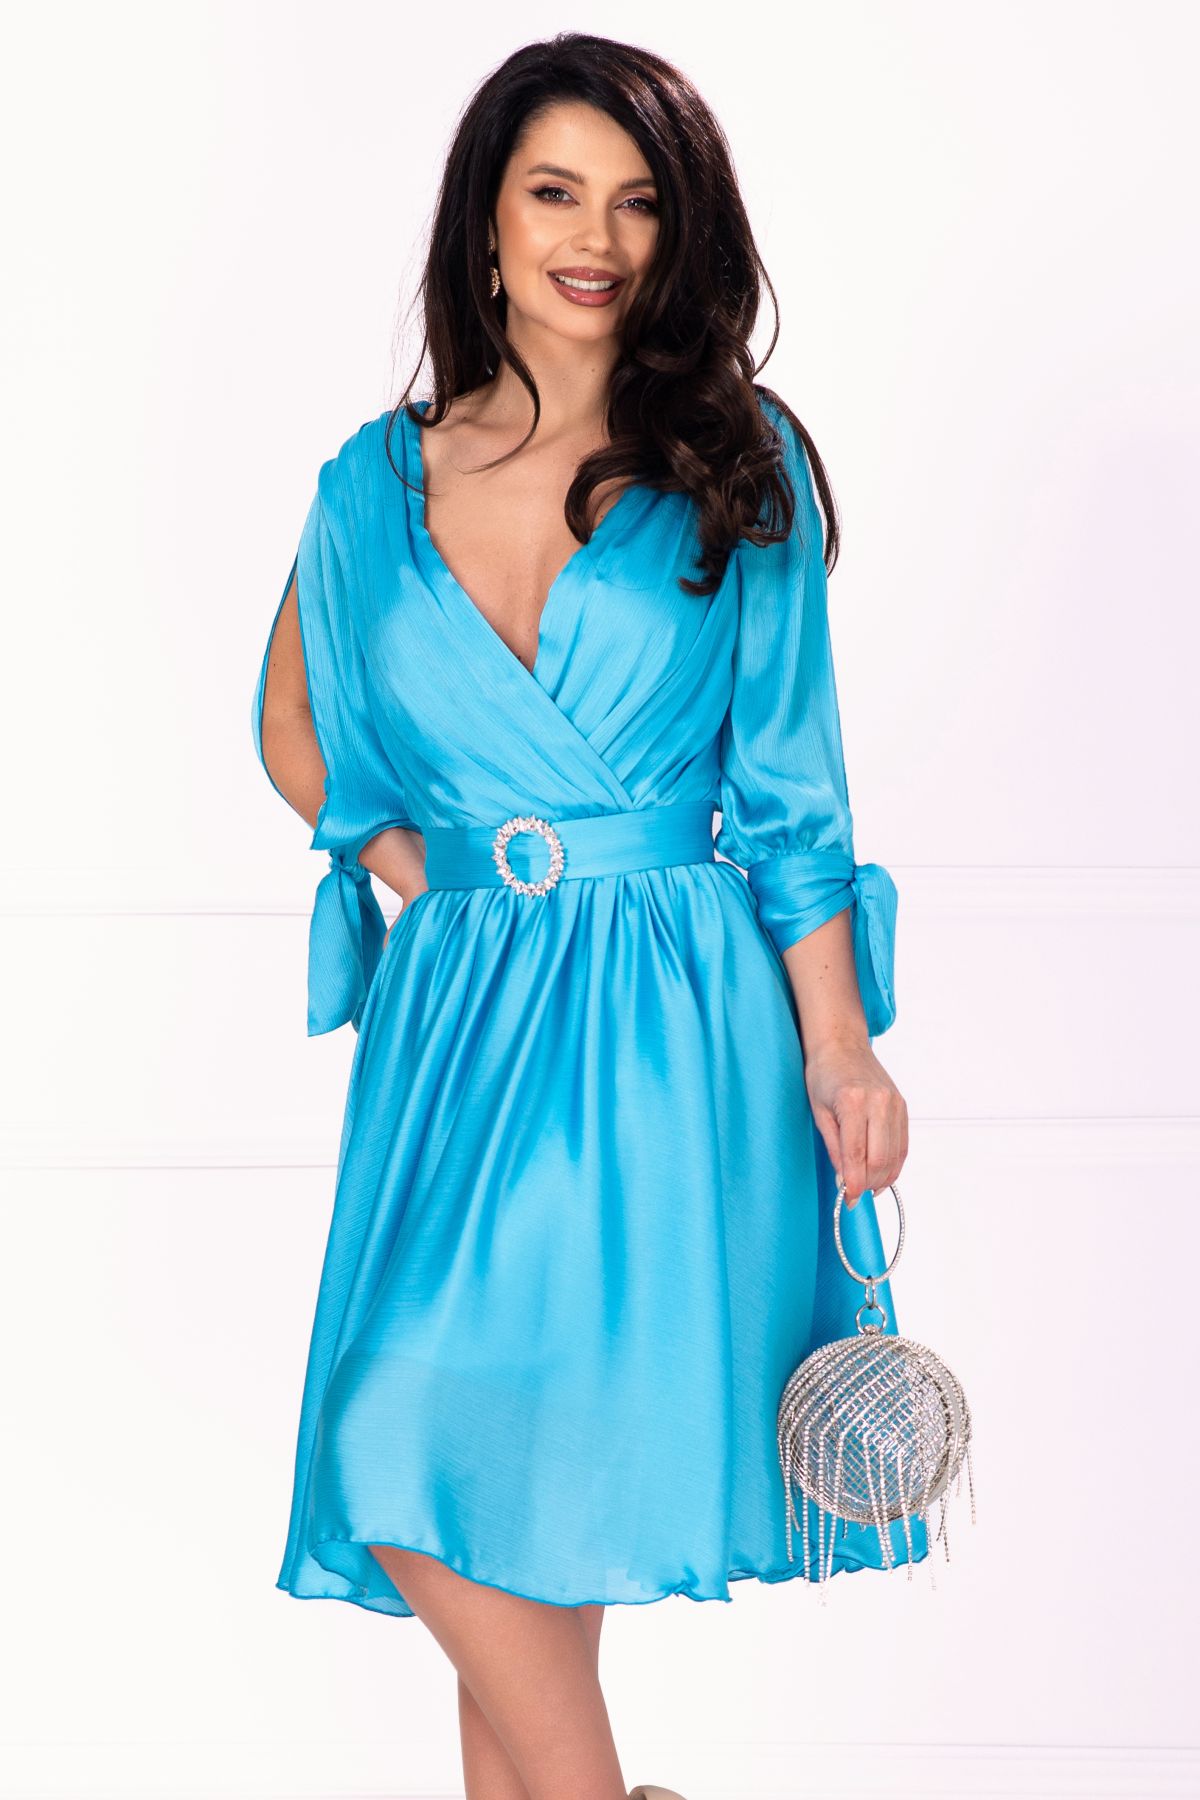 Rochie eleganta bleu Saray in clos cu catarama pretioasa image0